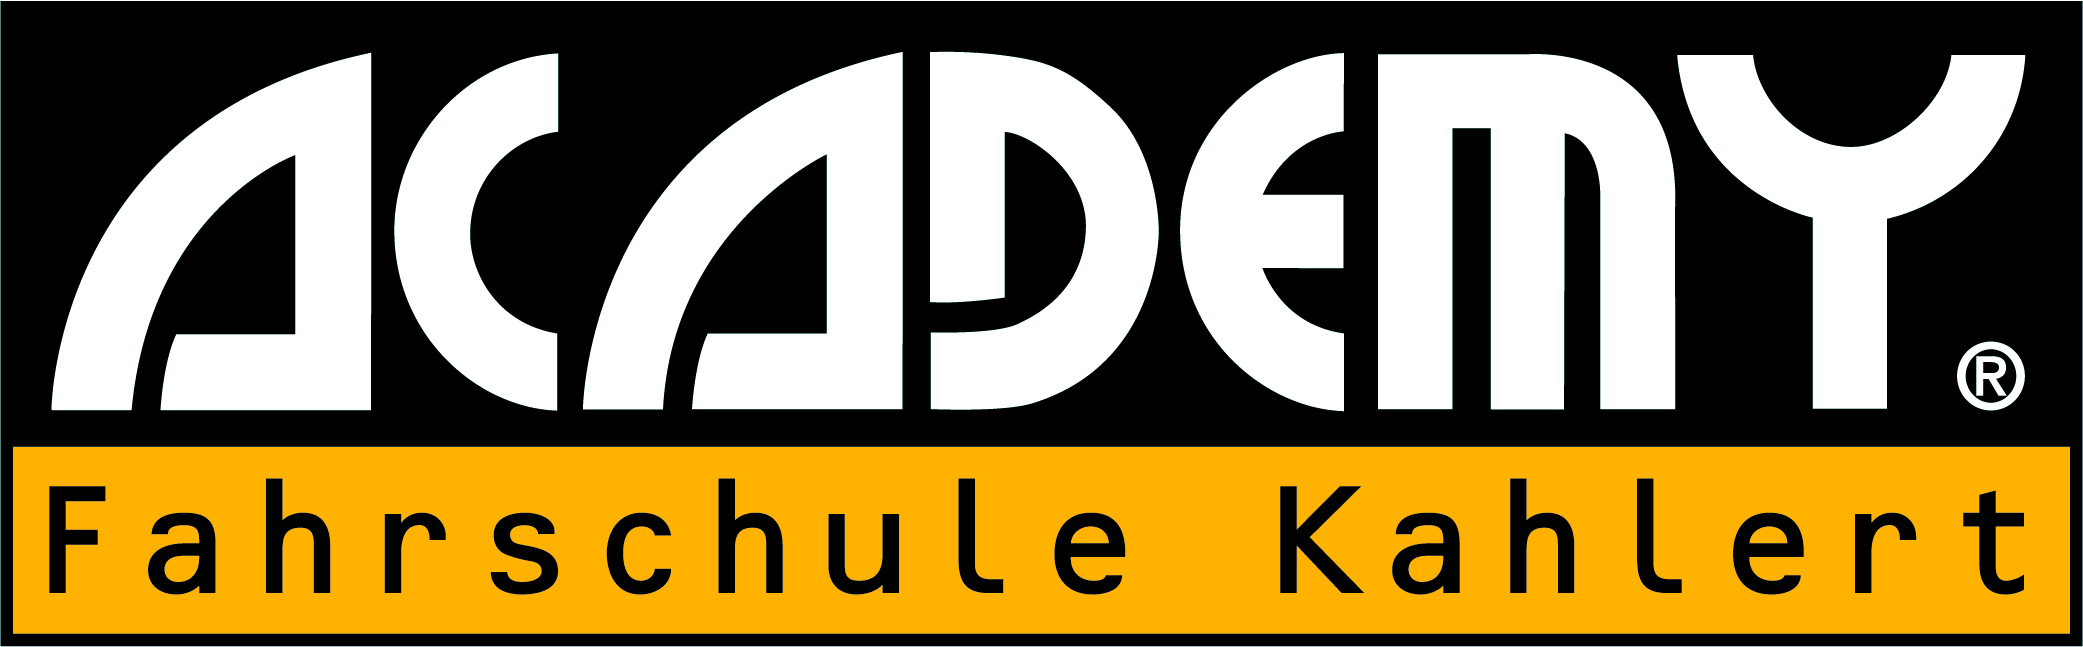 ACADEMY Fahrschule Kahlert - Kahl